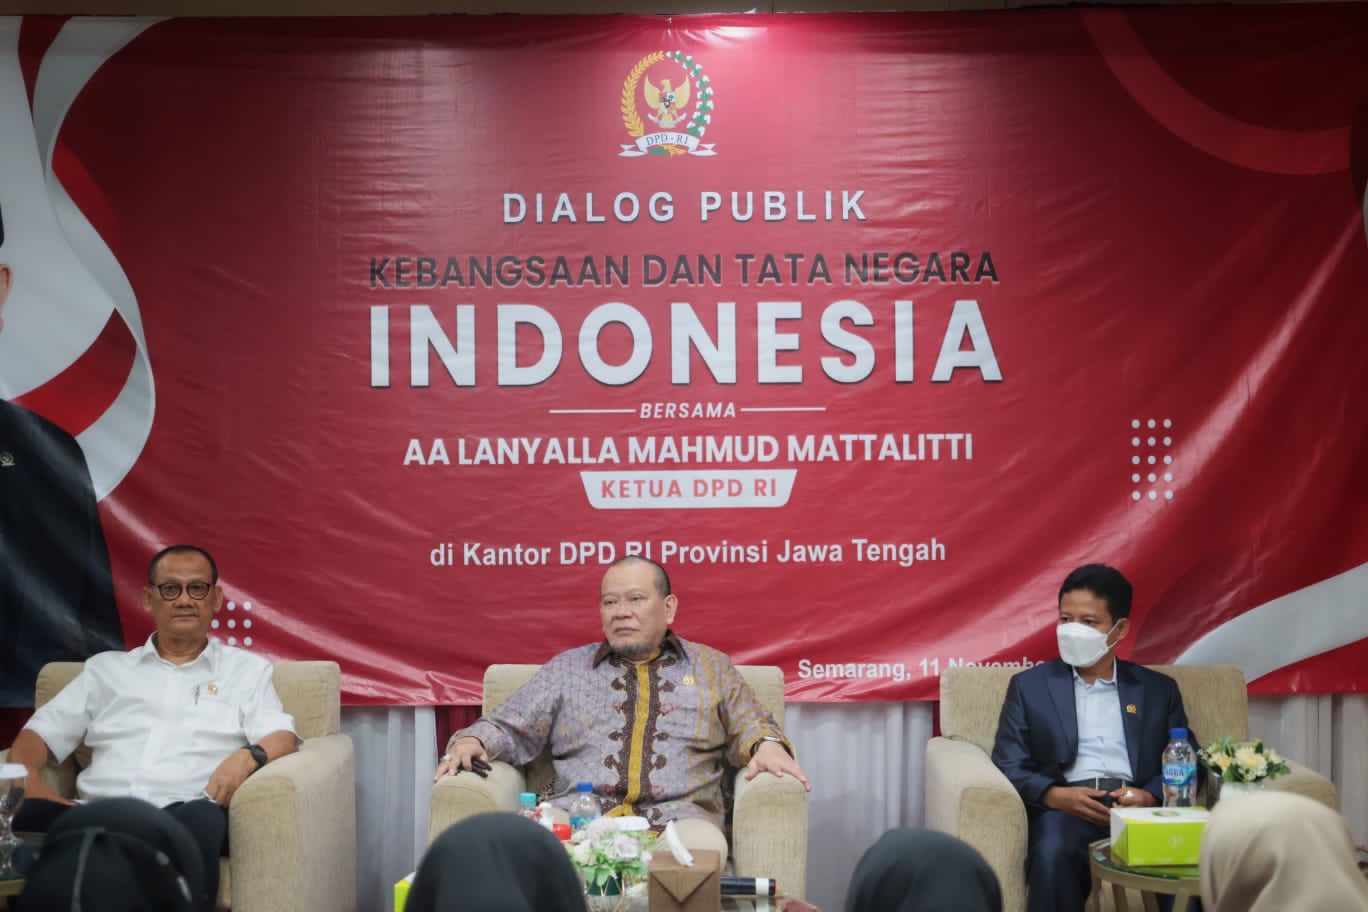 Ketua DPD RI: Hadapi Perubahan Global, Indonesia Harus Lakukan Reposisi dan Perkuat Keunggulan 